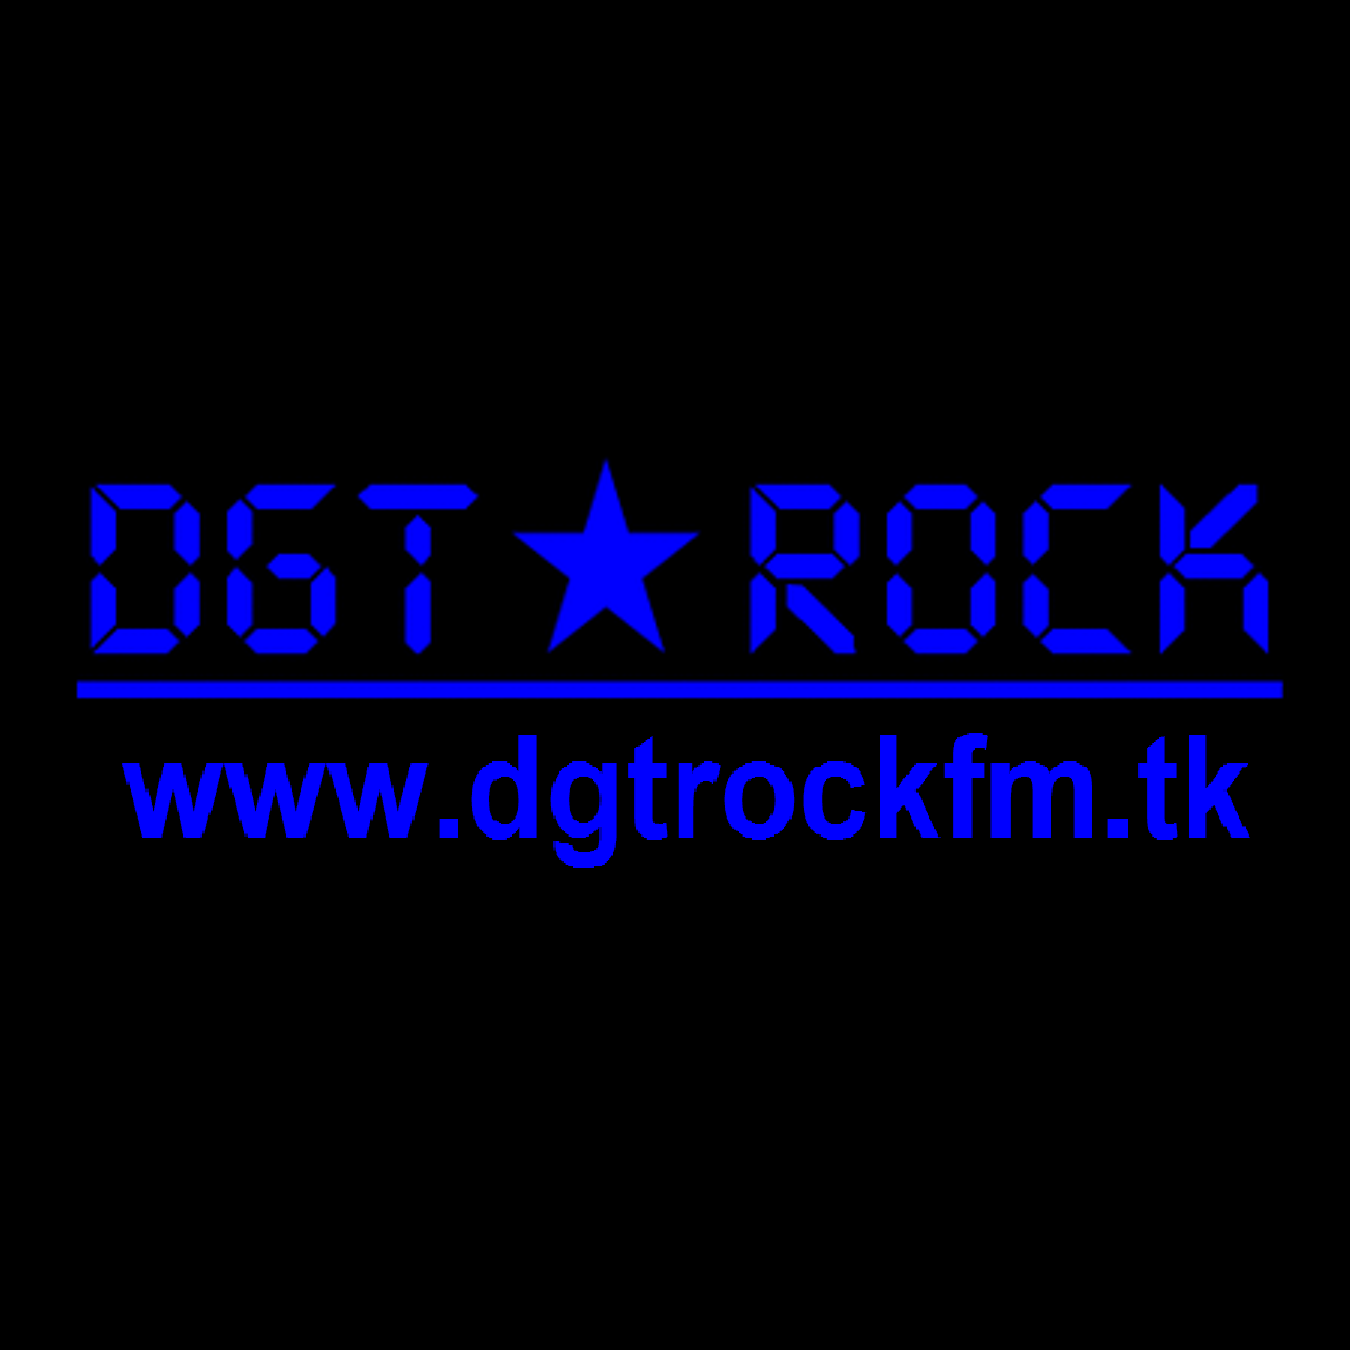 DGT ROCK - www.dgtrockfm.tk